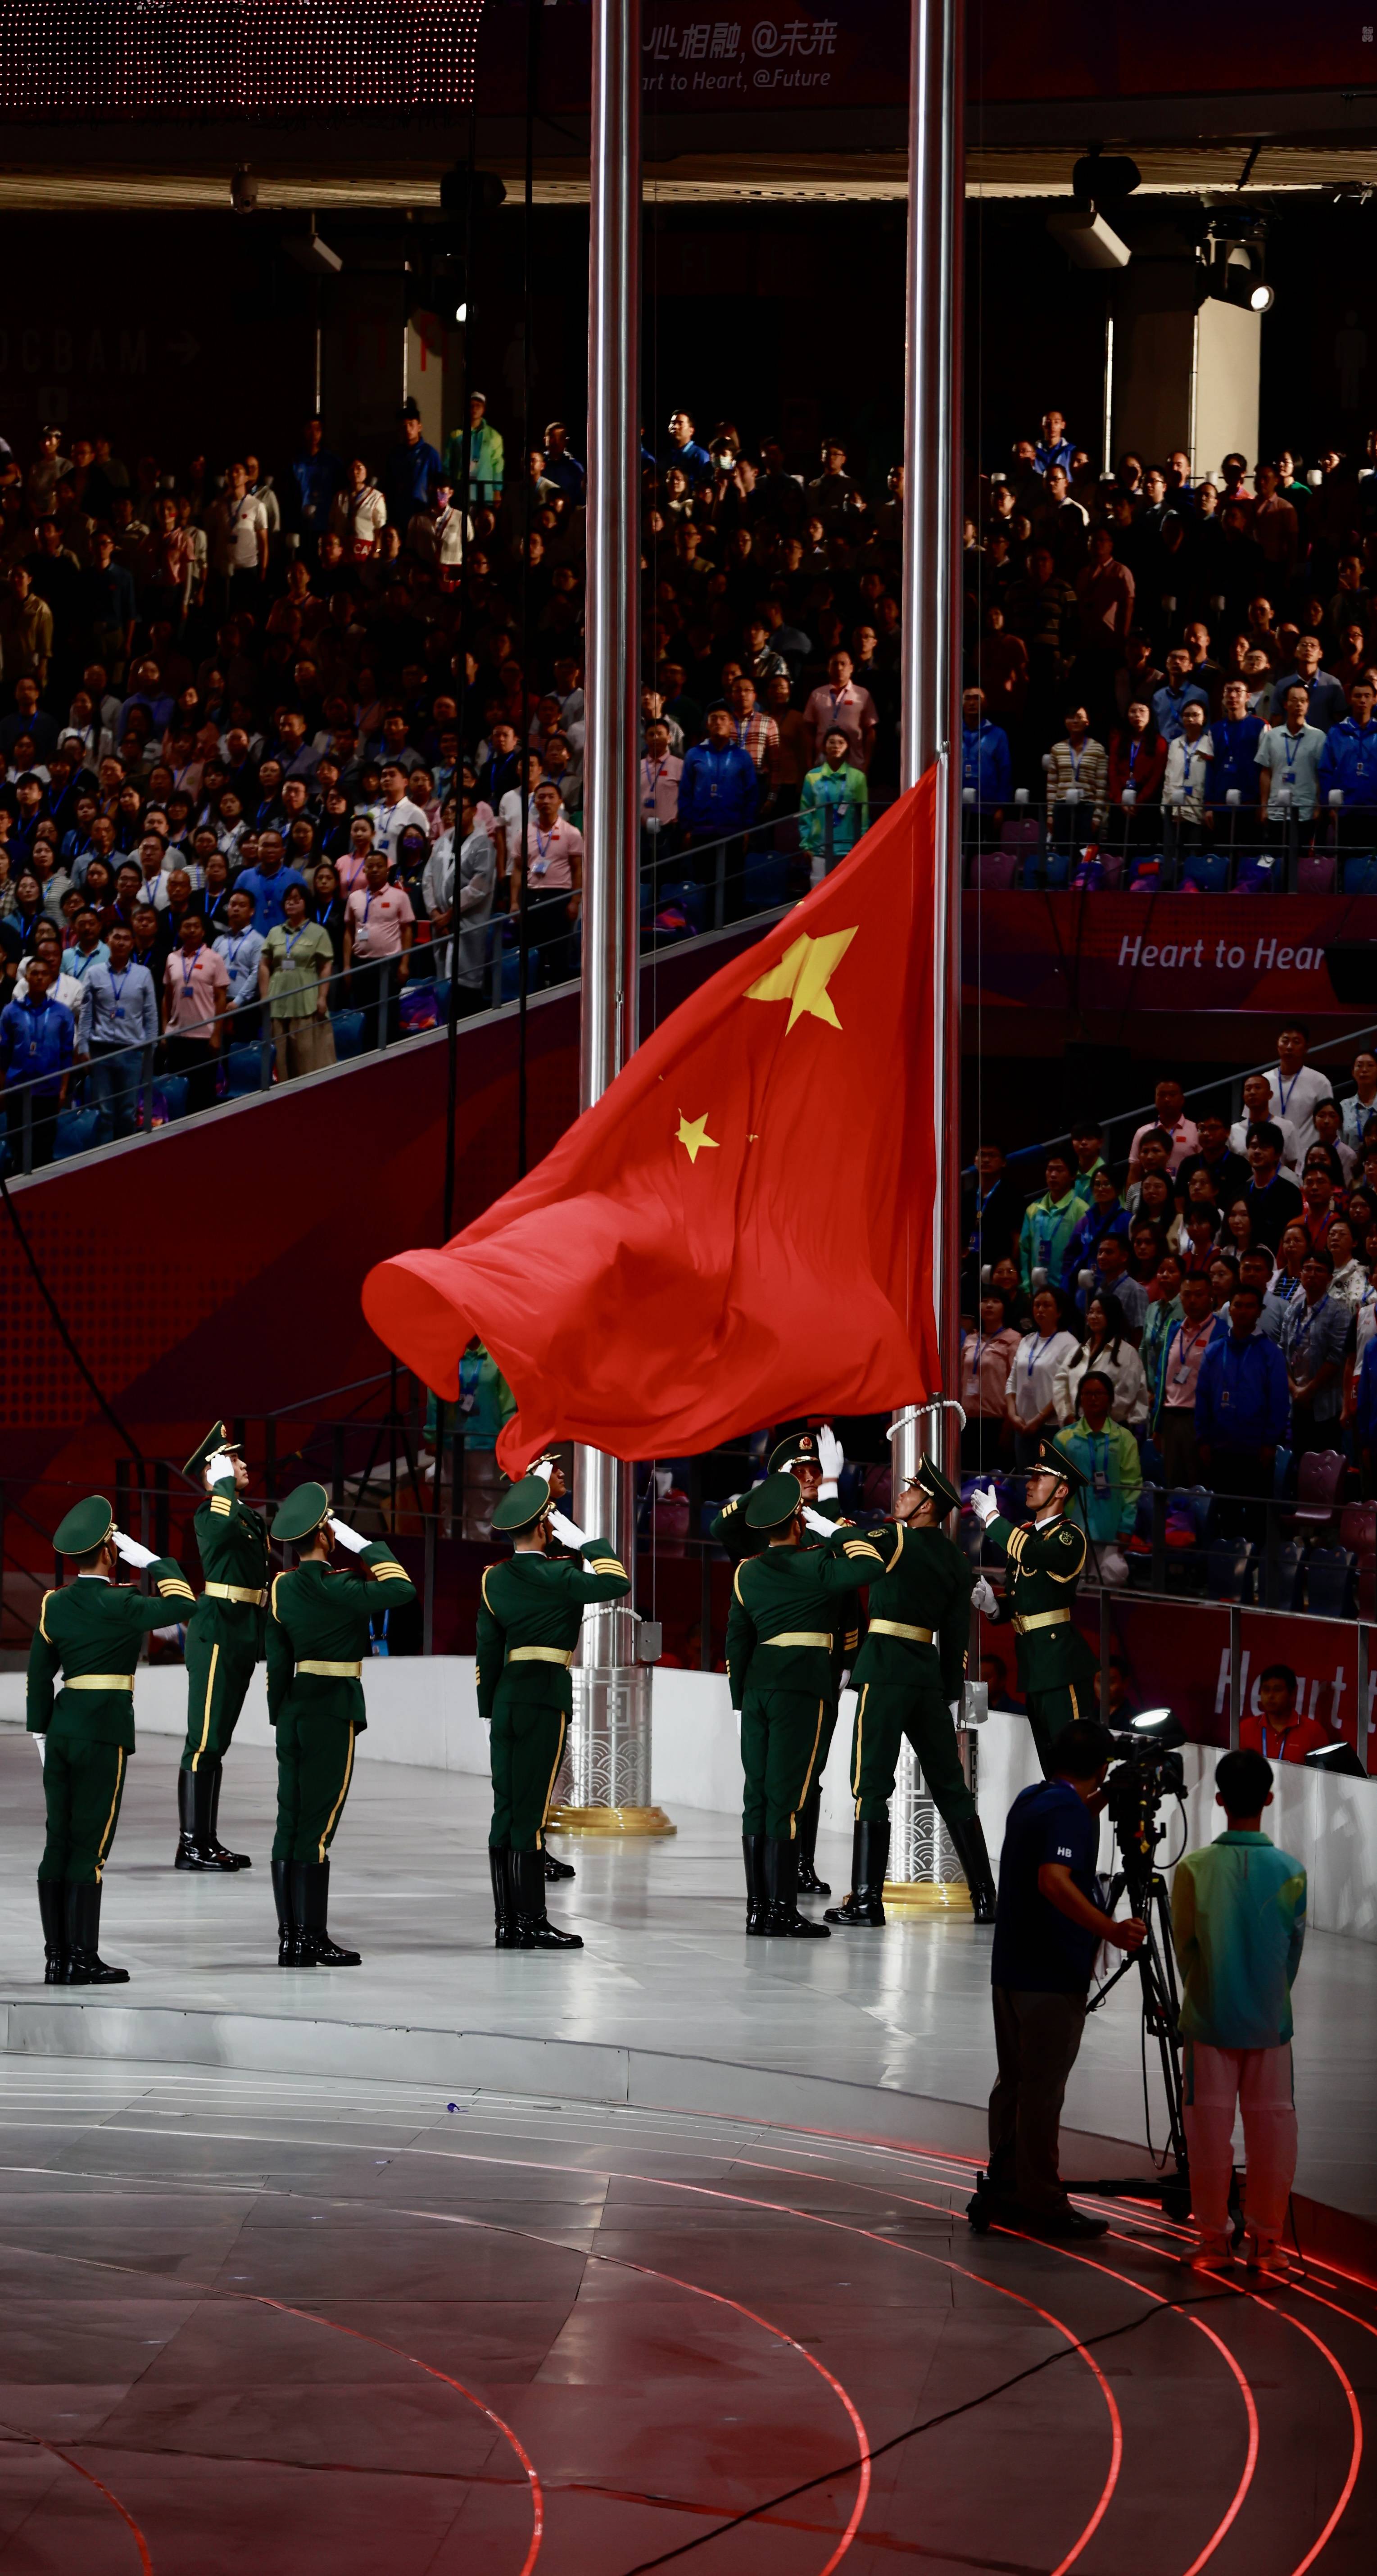 图2023年9月23日,浙江杭州,杭州亚运会开幕式举行,武警礼兵手举国旗